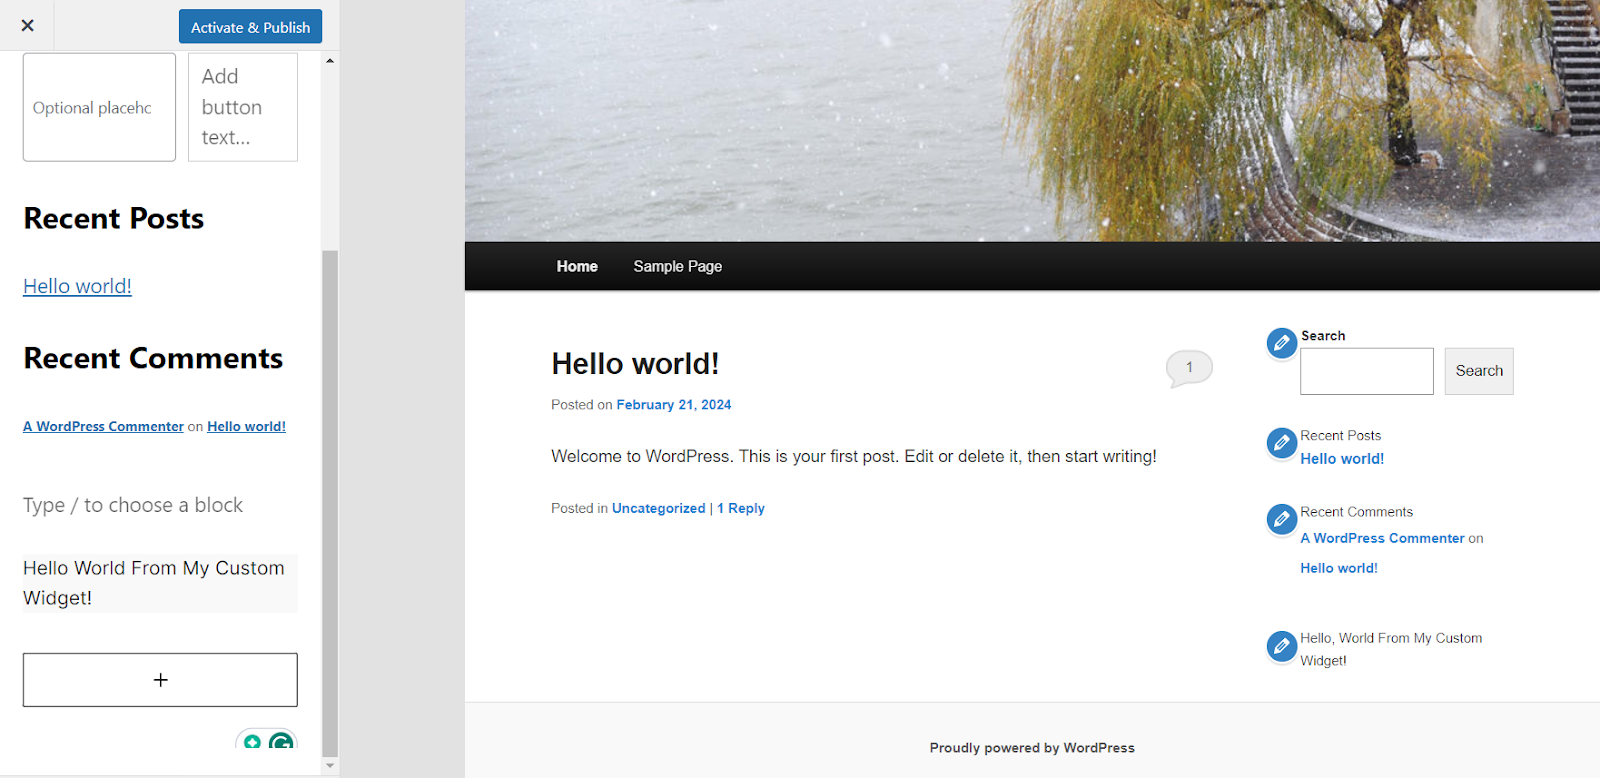 Captura de pantalla de la página de inicio del sitio de WordPress. La parte izquierda de la página tiene un menú con las entradas recientes y los comentarios recientes, con un botón Activar y Publicar